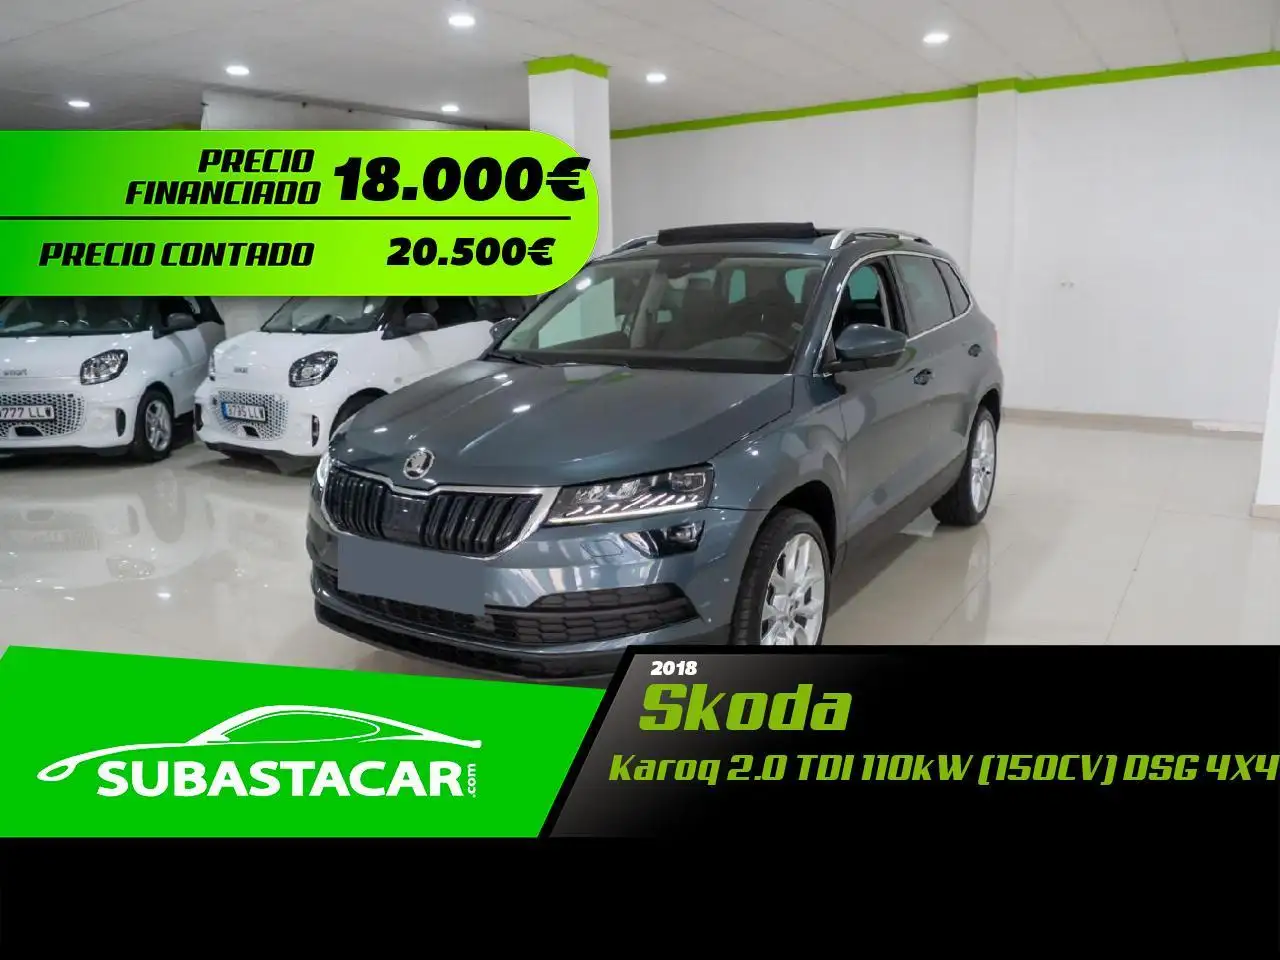 Skoda Karoq SUV/4x4/Pick-up in Grijs tweedehands in Toledo voor € 18.000,-